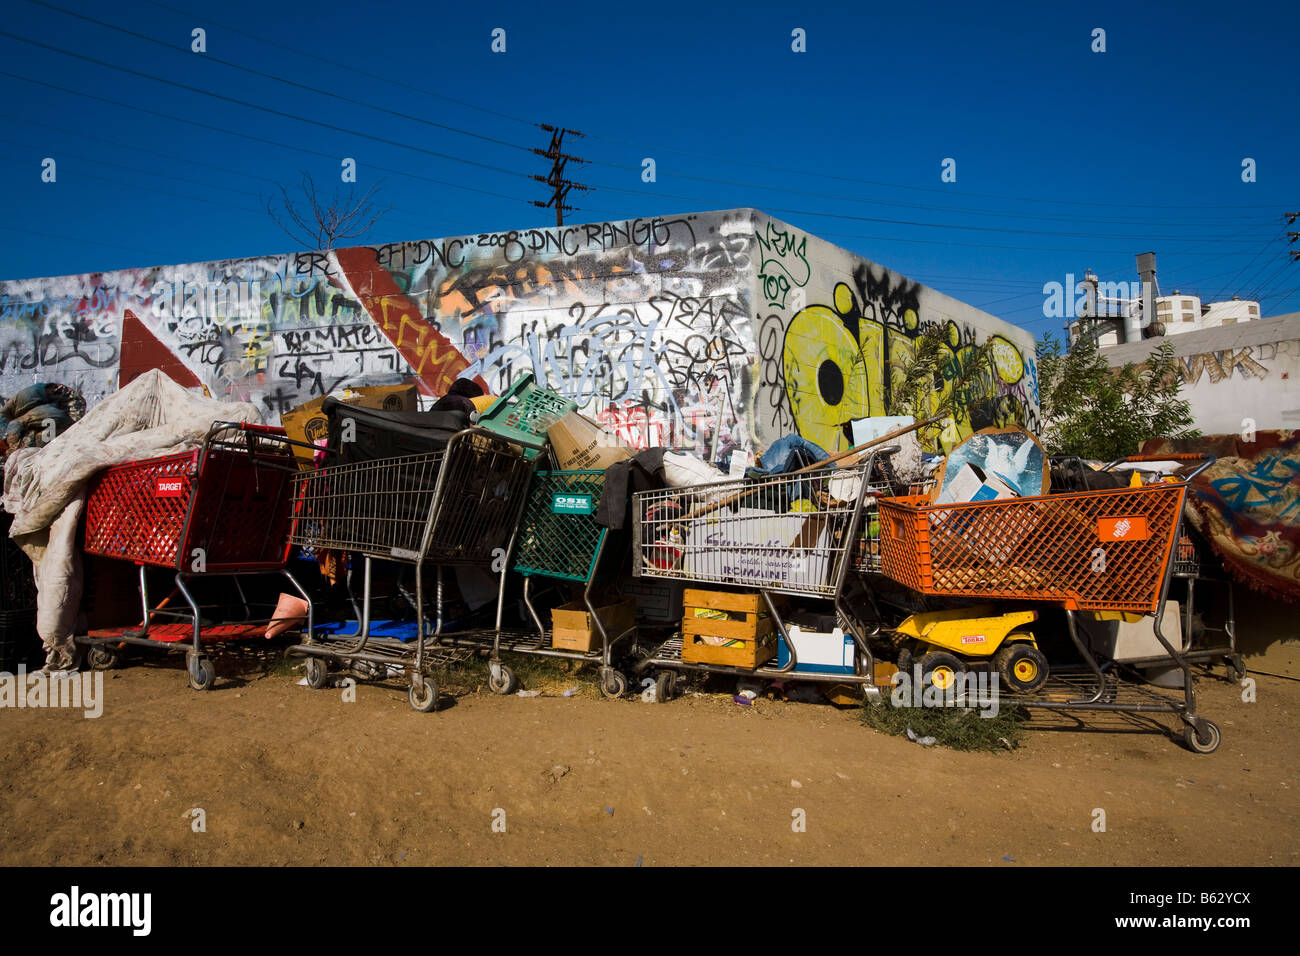 Shopping Carts en un hogar campamento cerca del río de Los Ángeles Los Ángeles, California, Estados Unidos de América Foto de stock